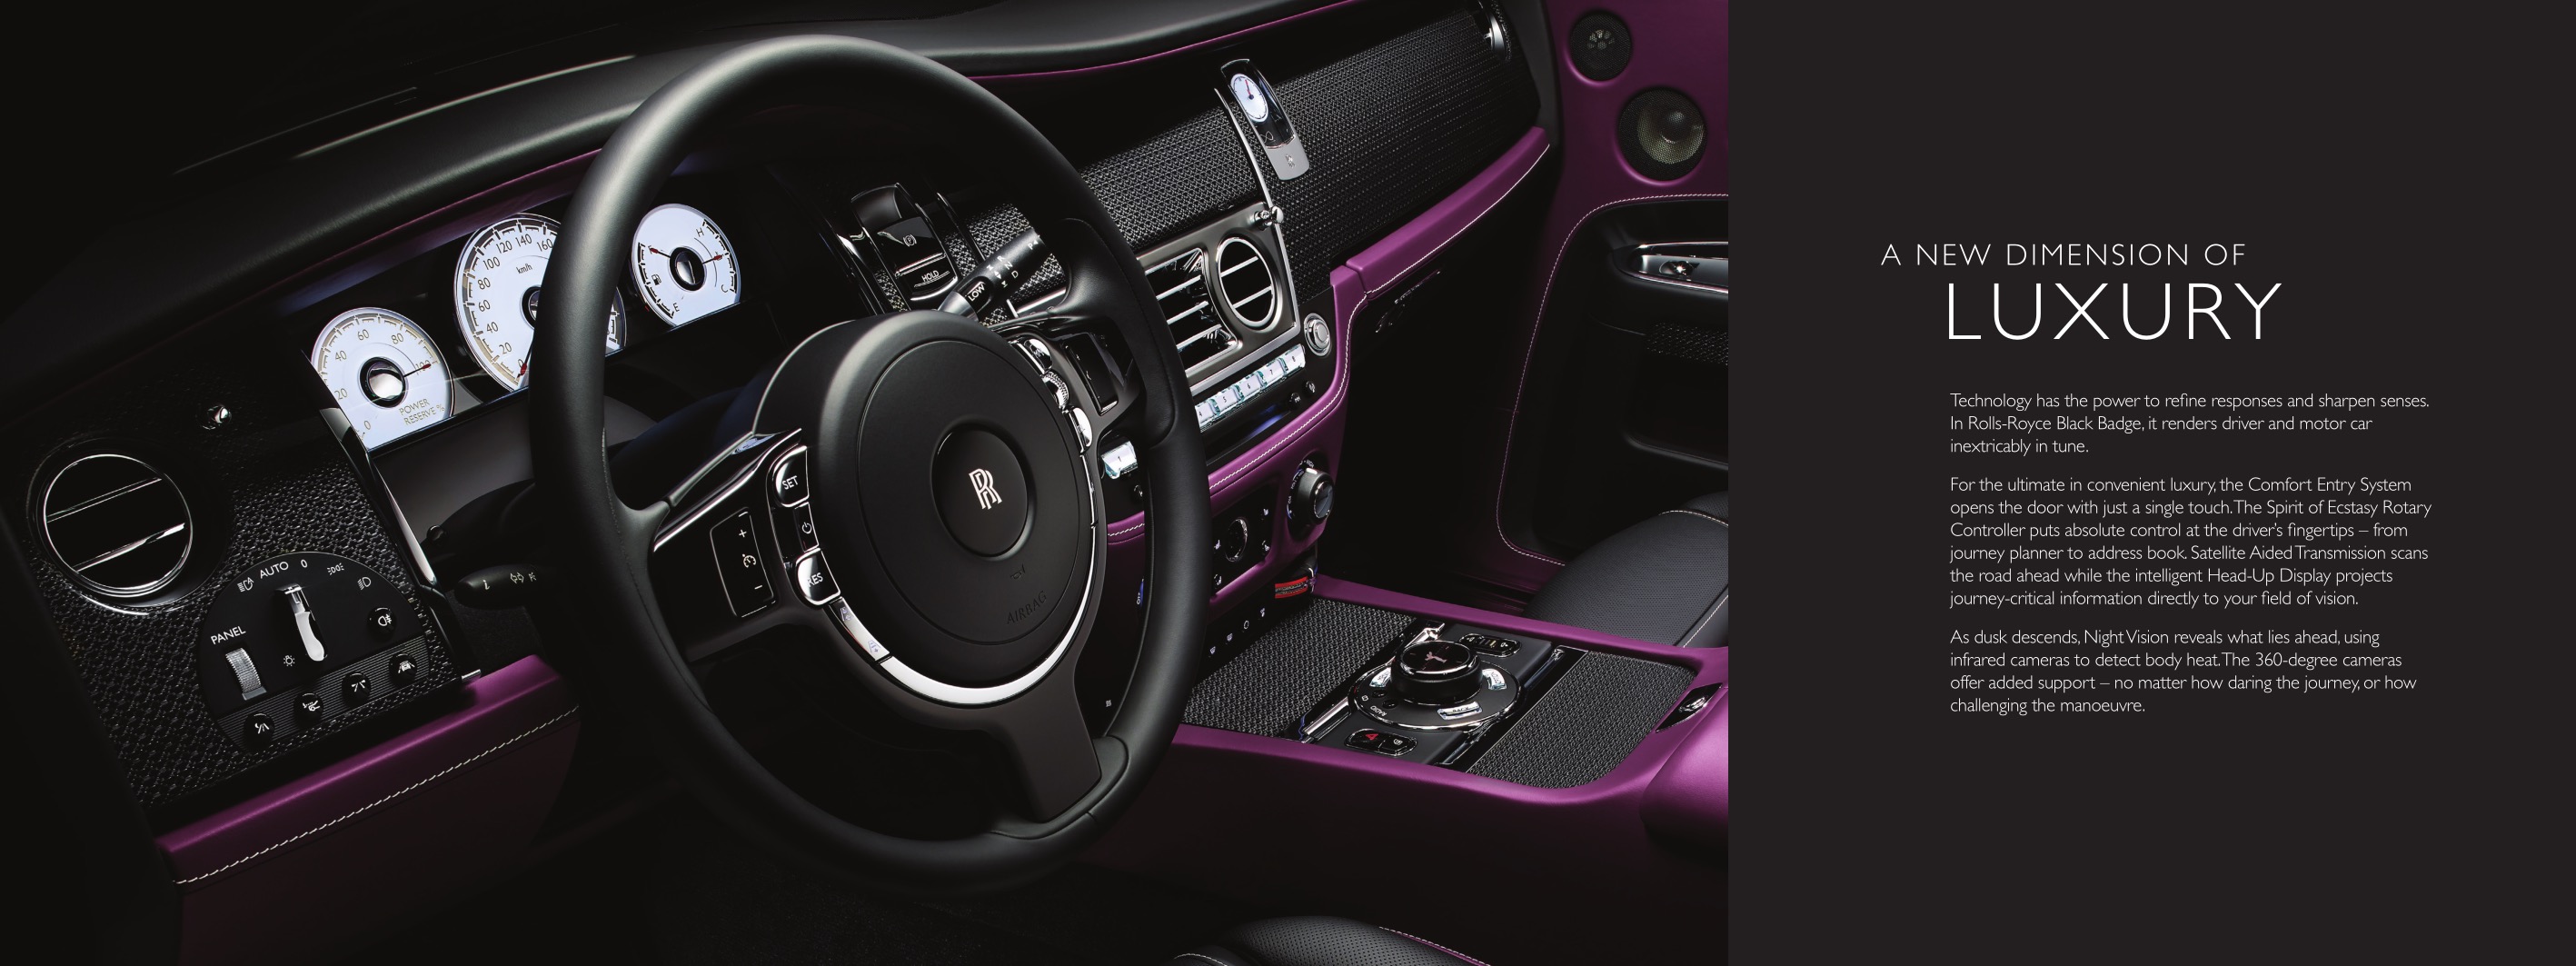 2016 Rolls-Royce Black Badge Brochure Page 3